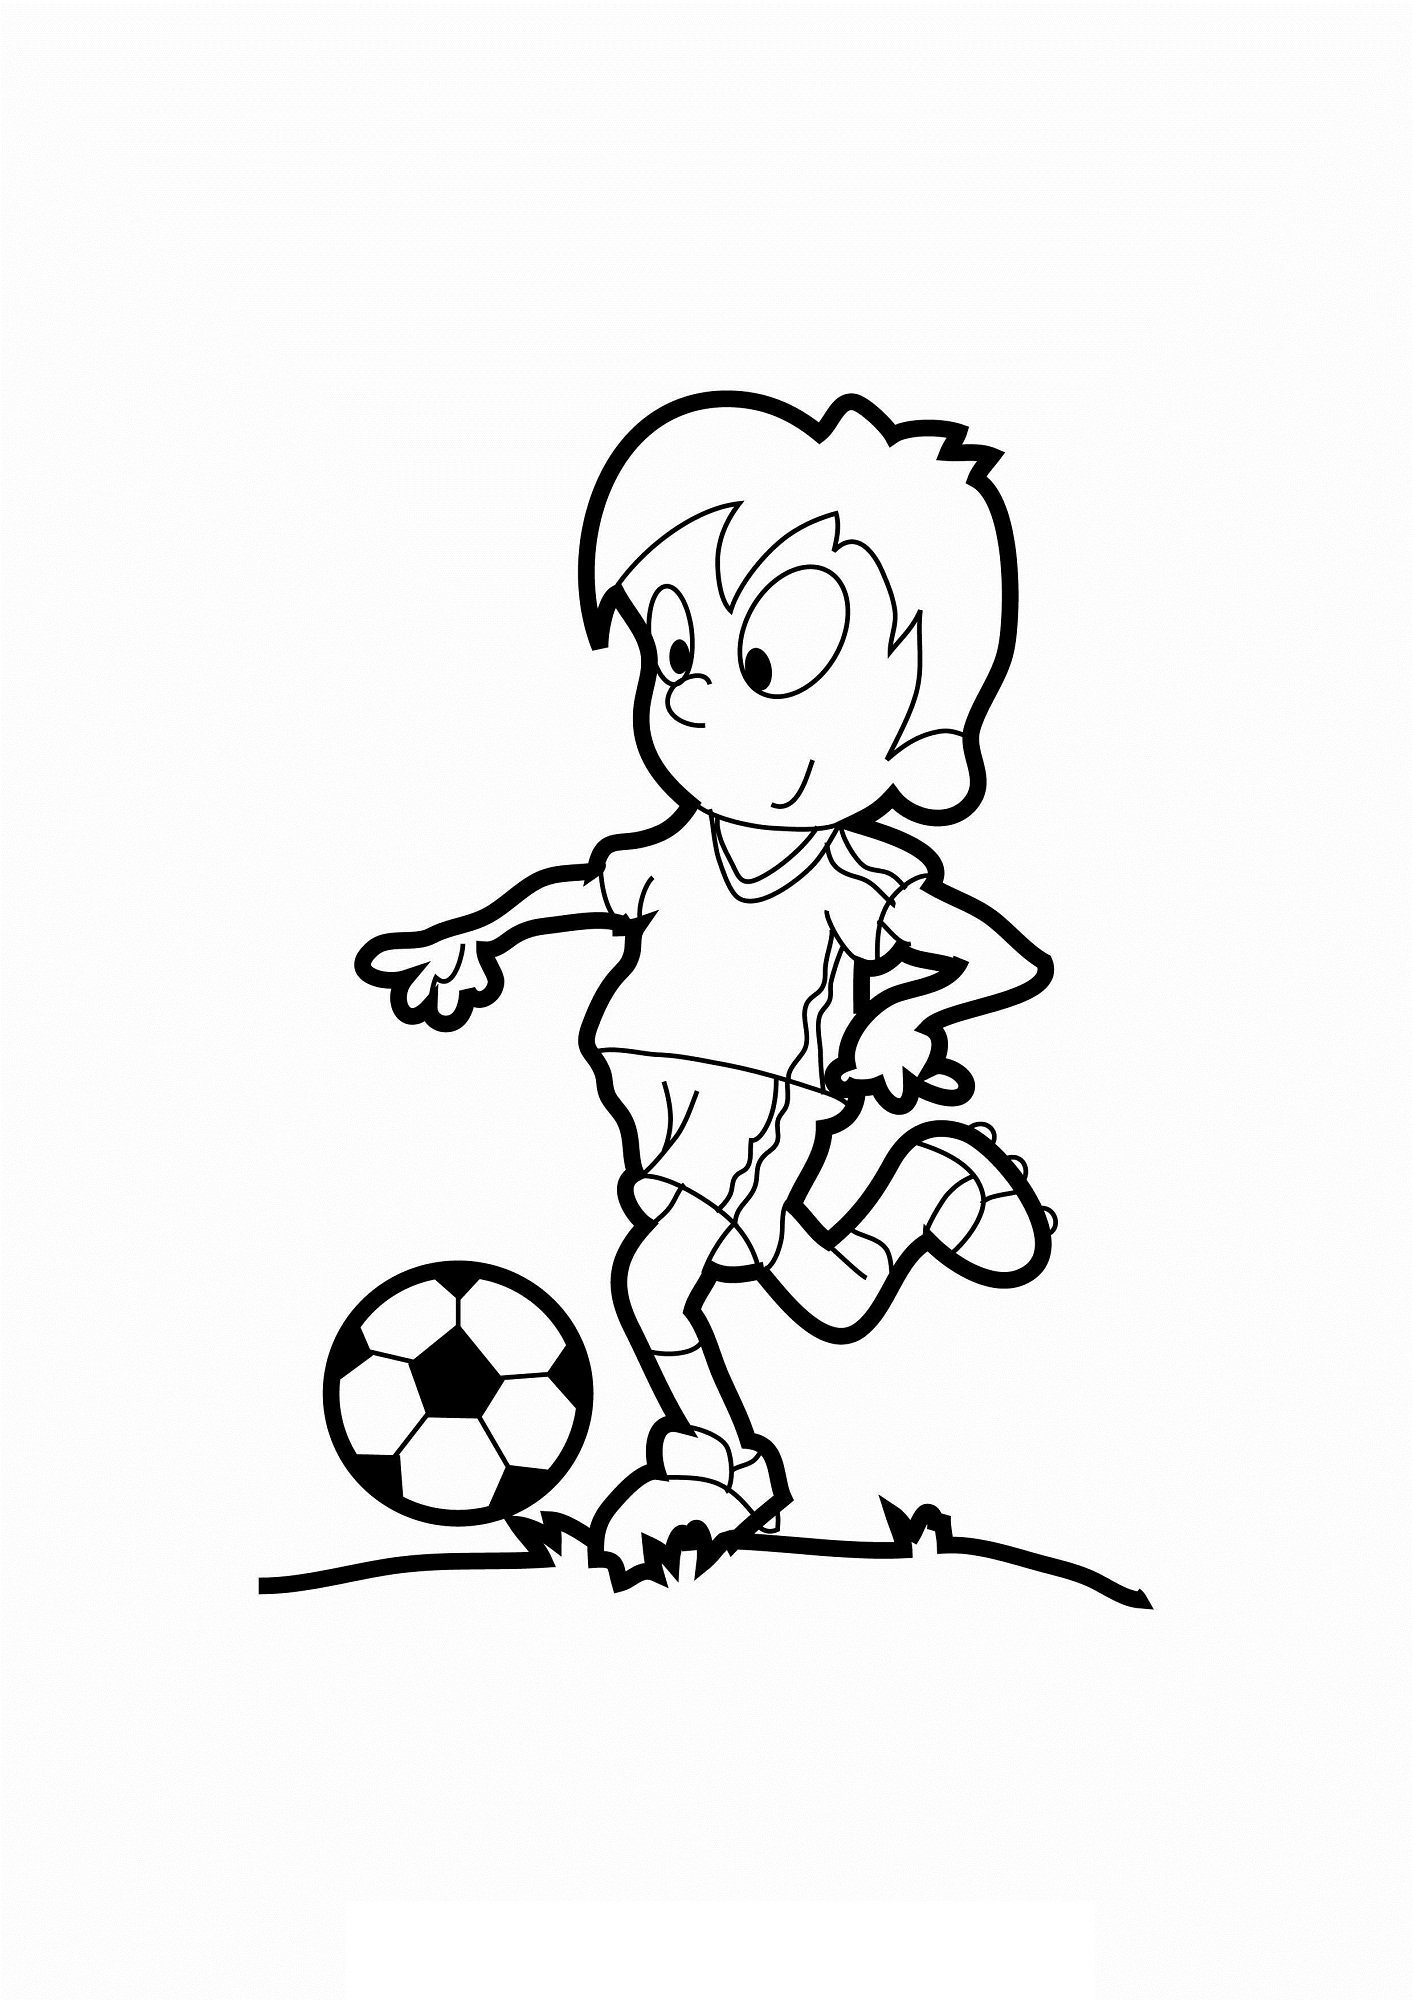 Рисунок рисовать играть. Футбол раскраска для детей. Футбол рисунок карандашом. Раскраска AEH,jkfдля детей. Раскраска игра в футбол.